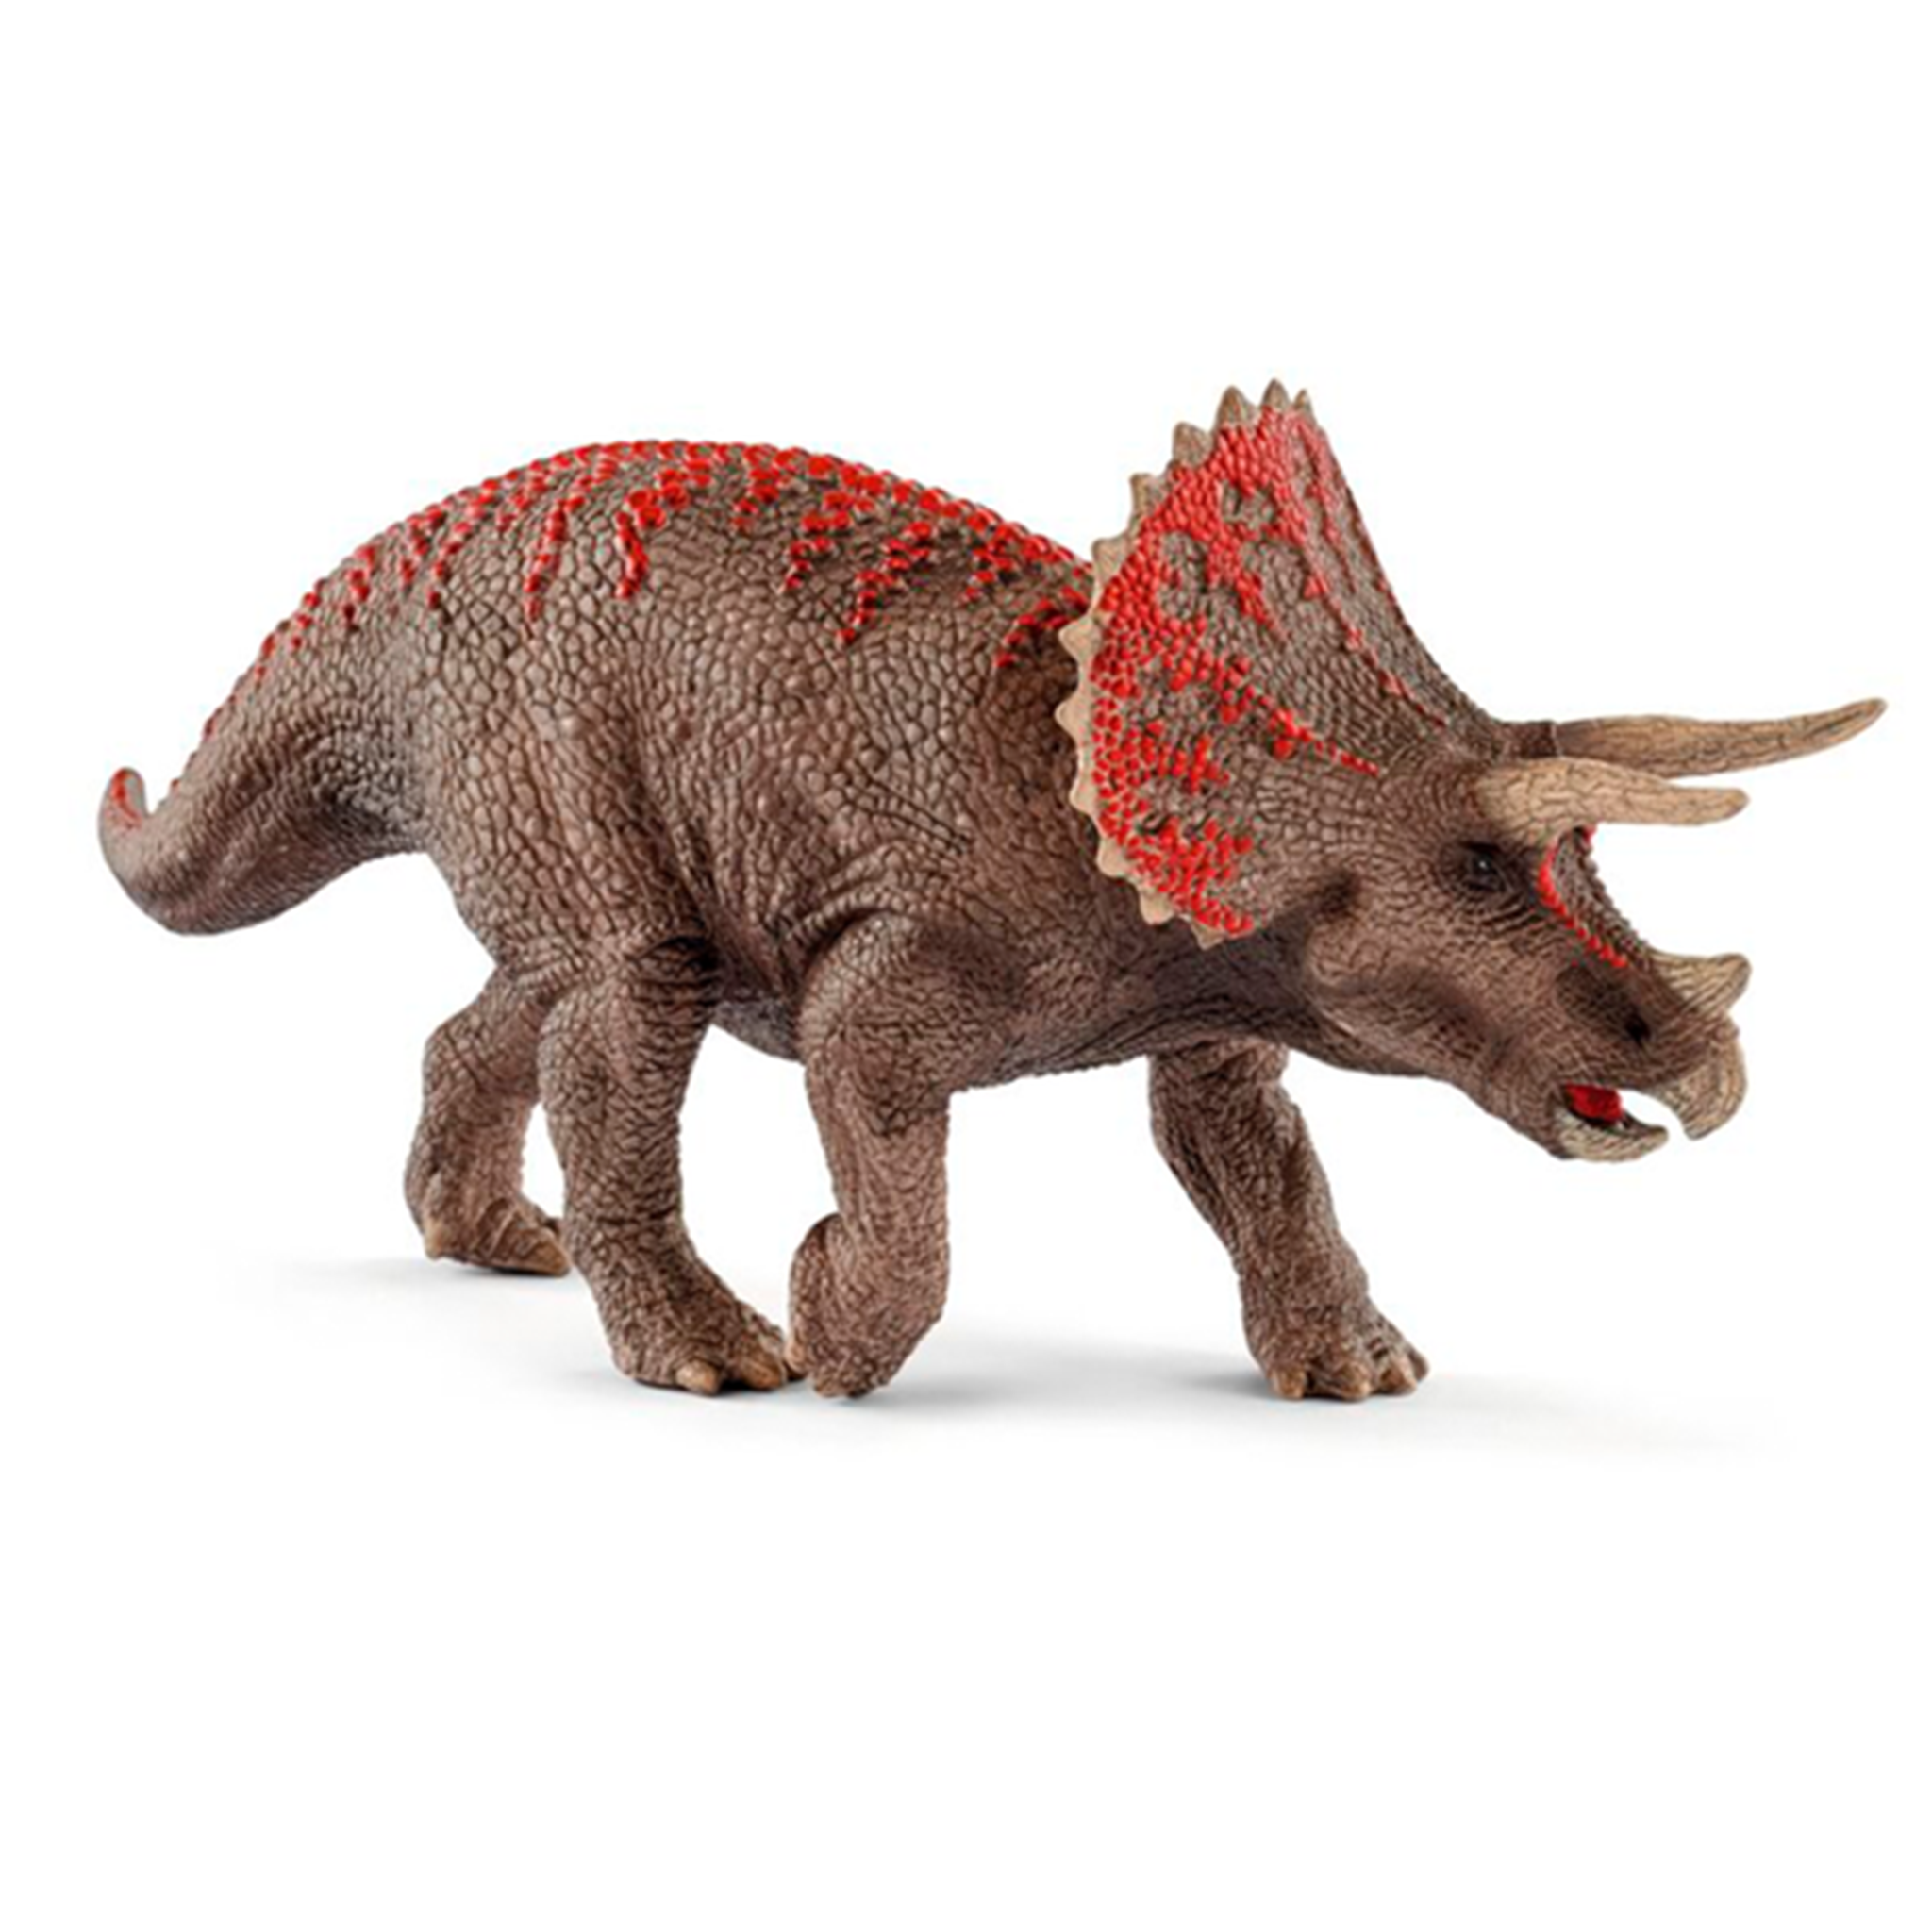 Schleich Dinosaurs Triceratops